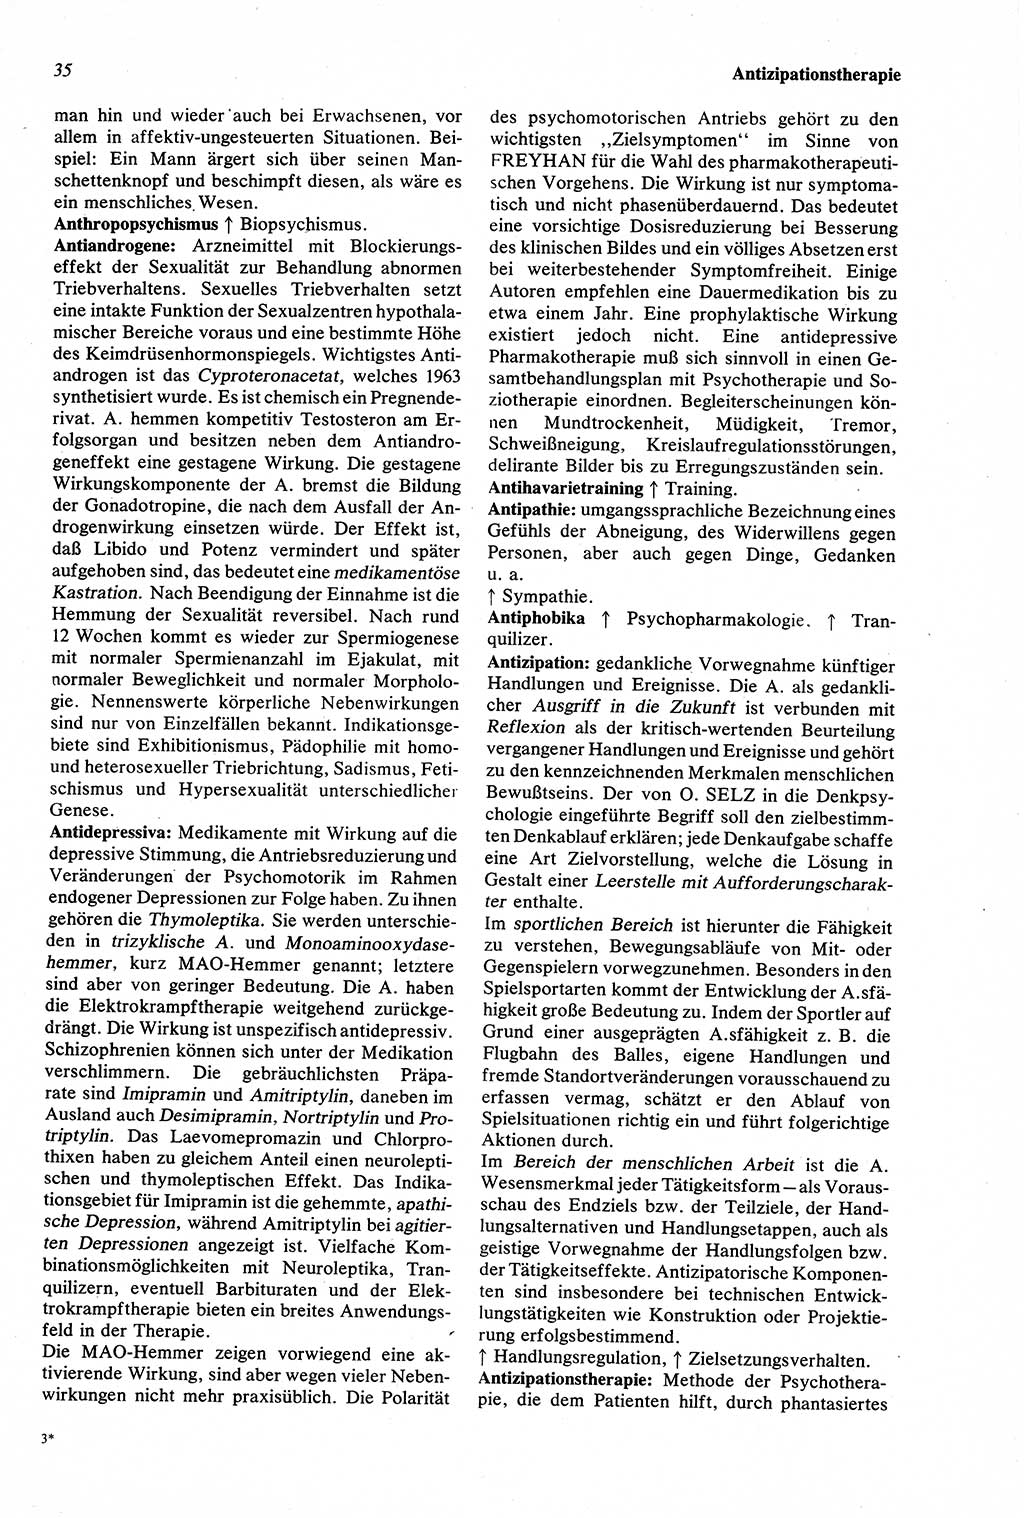 Wörterbuch der Psychologie [Deutsche Demokratische Republik (DDR)] 1976, Seite 35 (Wb. Psych. DDR 1976, S. 35)